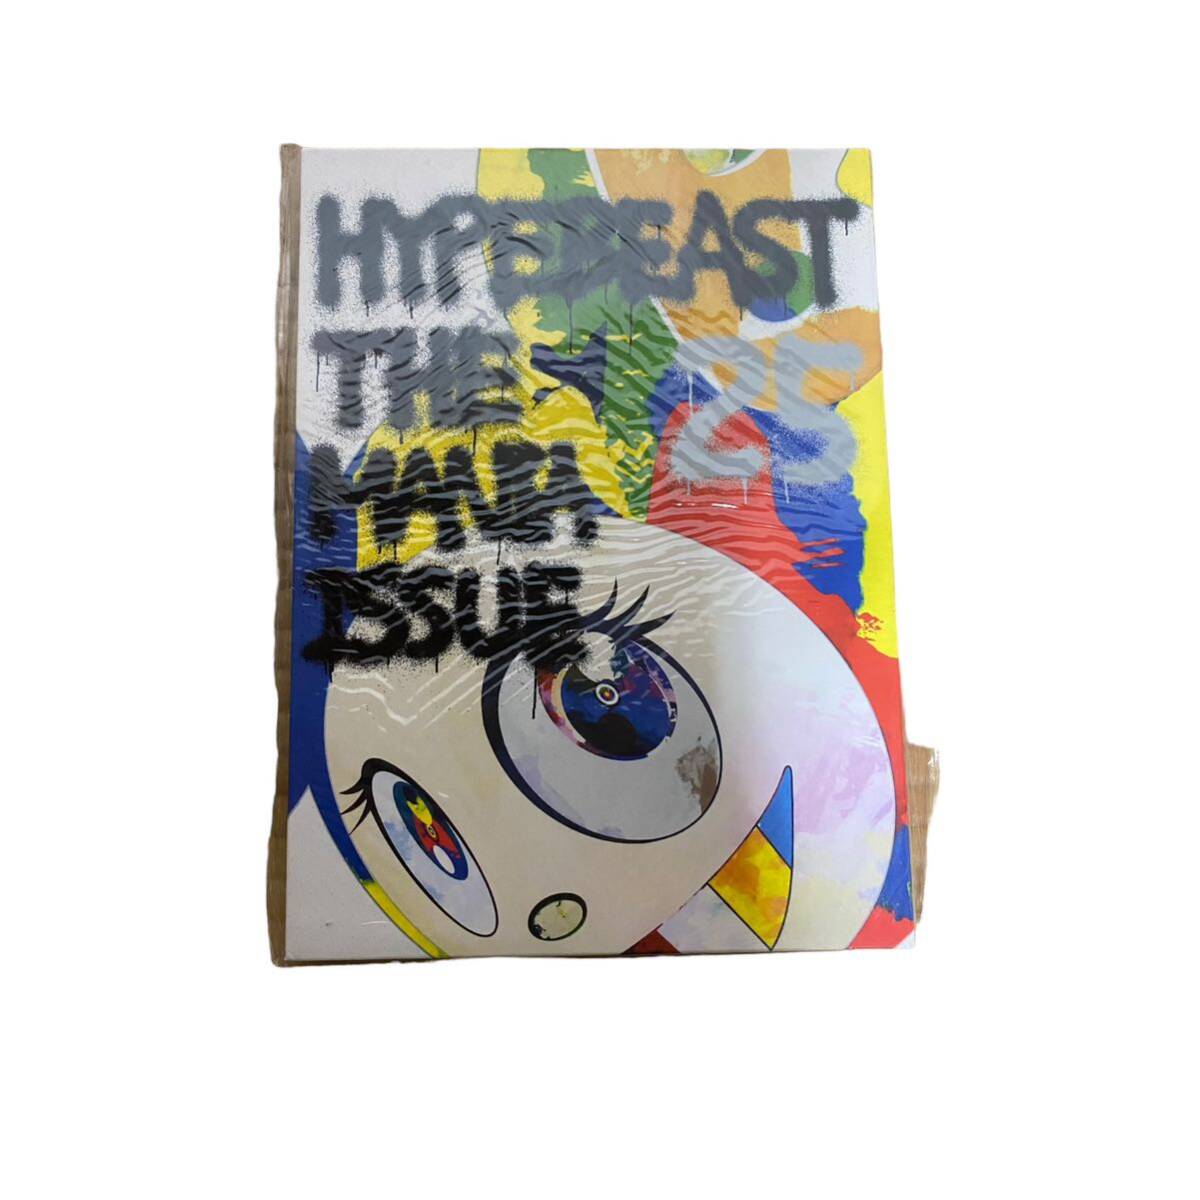 ★3冊セット★新品未使用★ HYPEBEAST MAGAZINE #25: The Mania Issue 全3種セット 村上隆 Murakami Takashi ハイプビーストの画像4